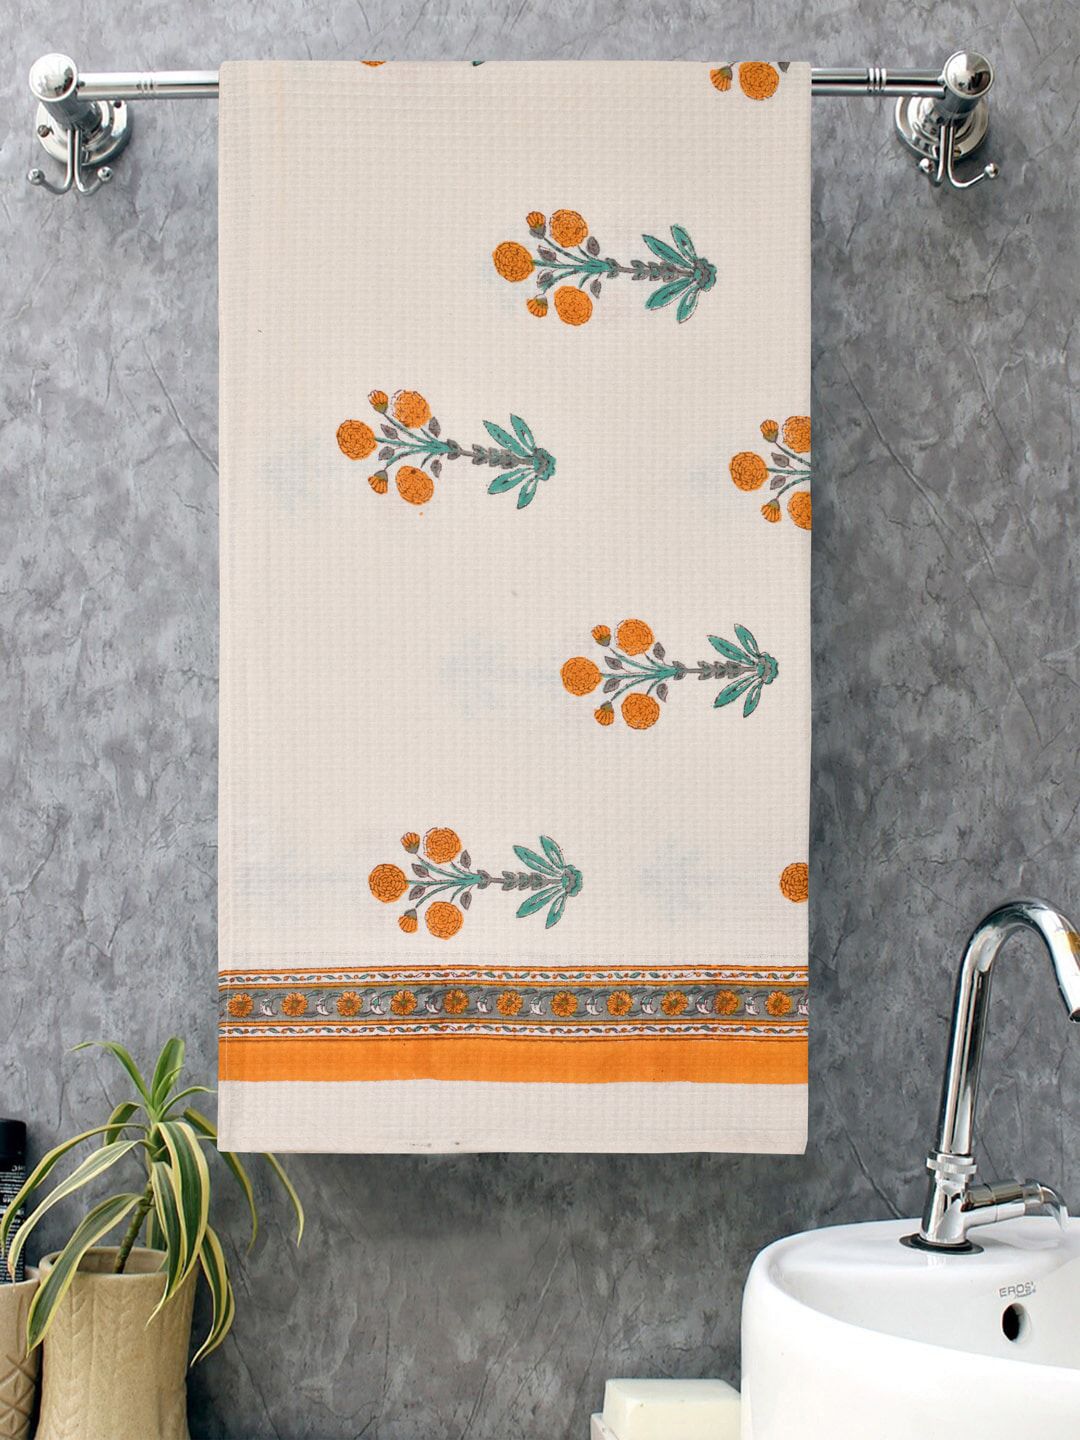 Gulaab Jaipur White & Orange Printed 400 GSM Organic Cotton Bath Towel Price in India